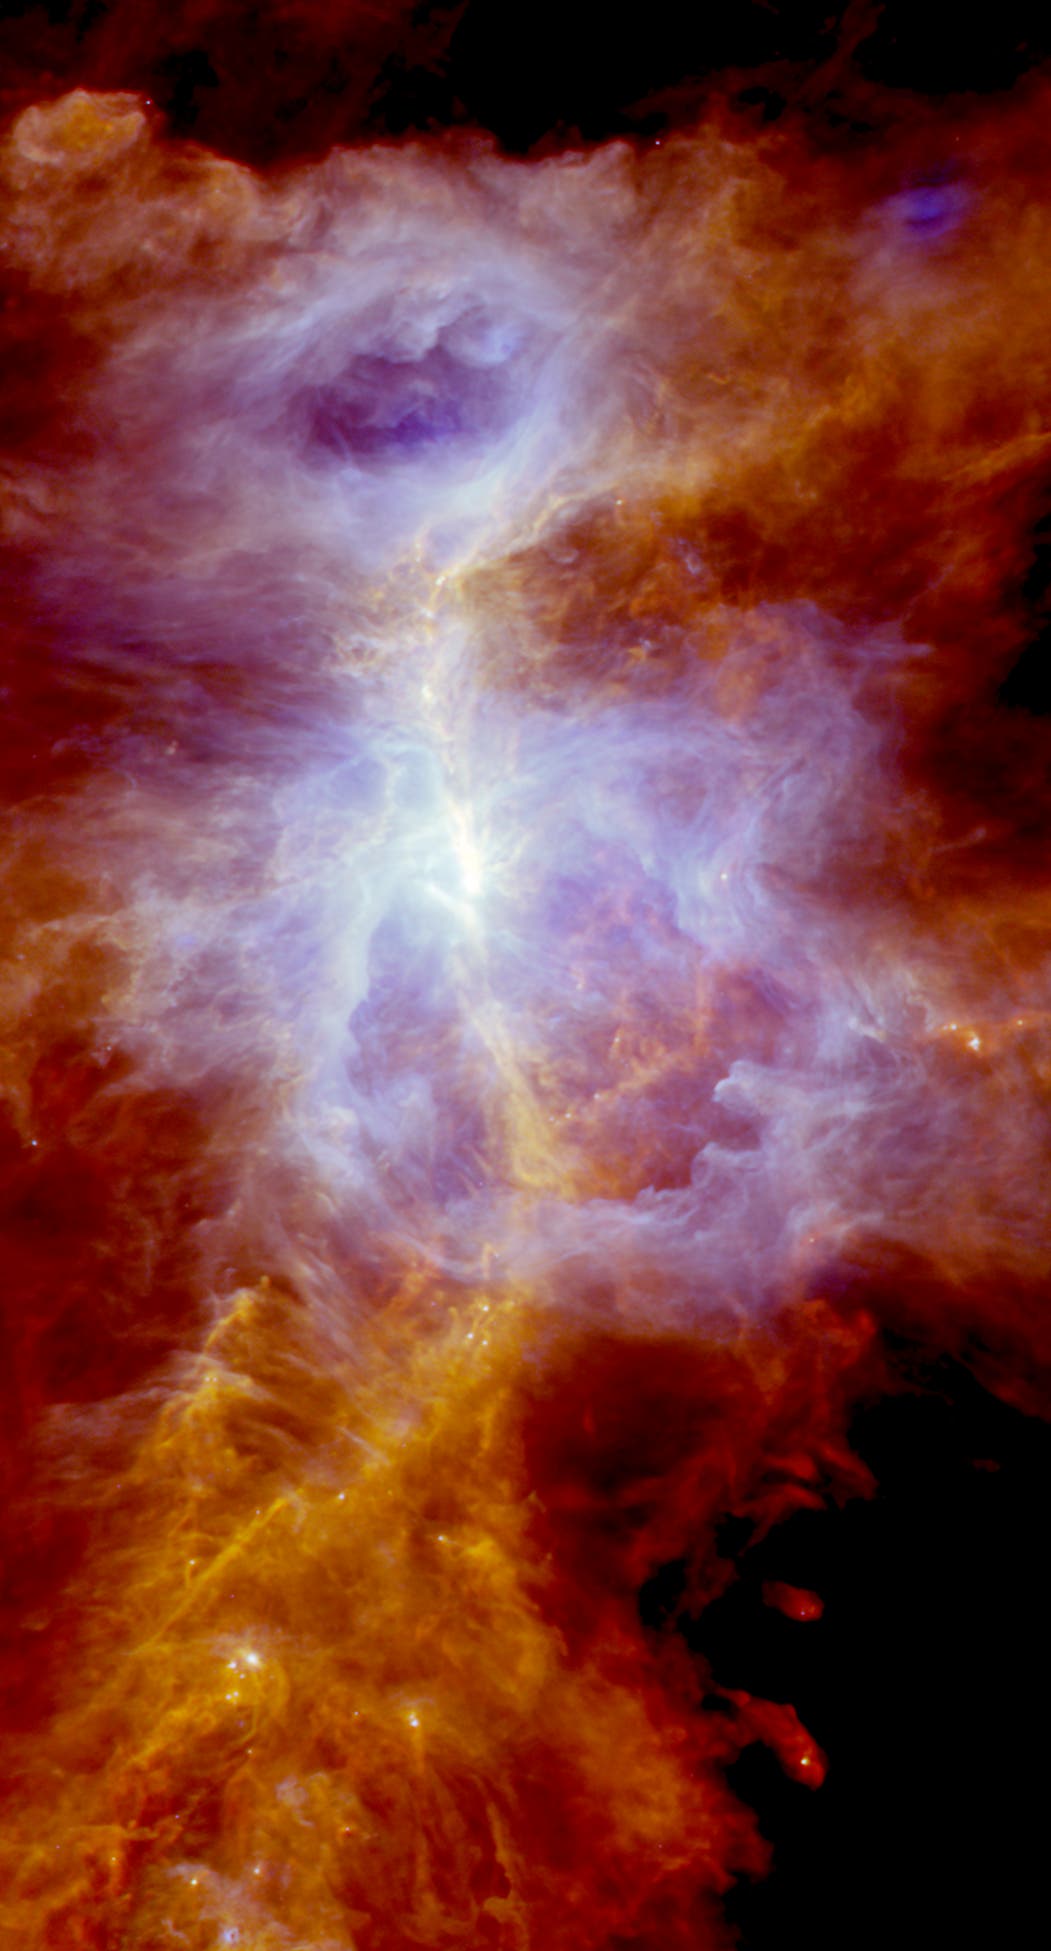 Der Orionnebel im Blick von Herschel (Panoramabild)